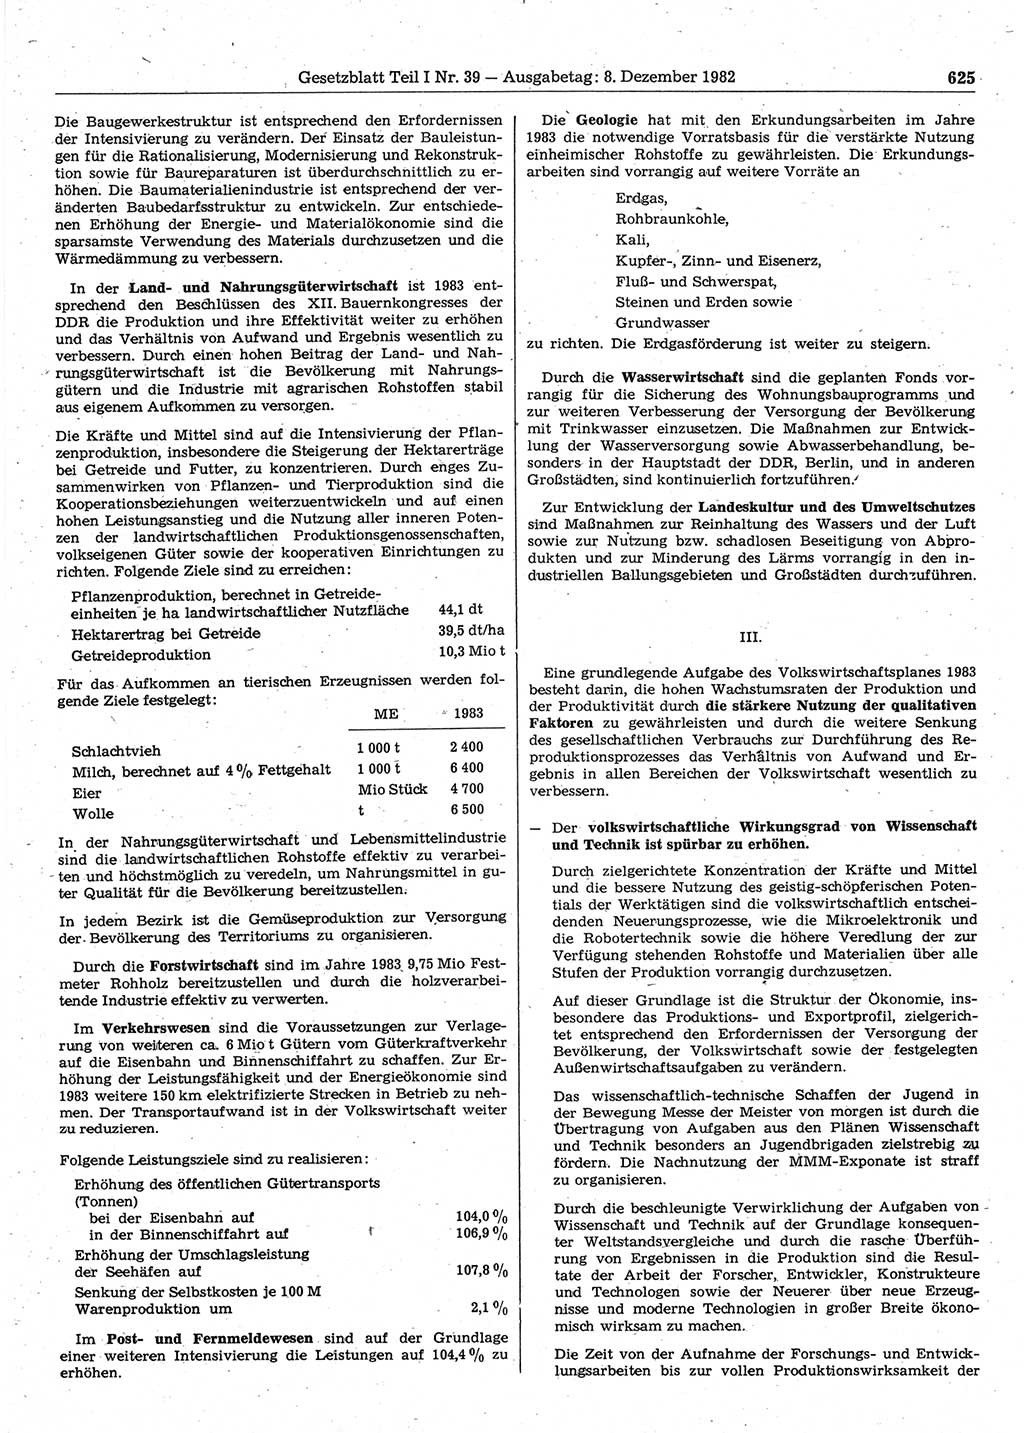 Gesetzblatt (GBl.) der Deutschen Demokratischen Republik (DDR) Teil Ⅰ 1982, Seite 625 (GBl. DDR Ⅰ 1982, S. 625)